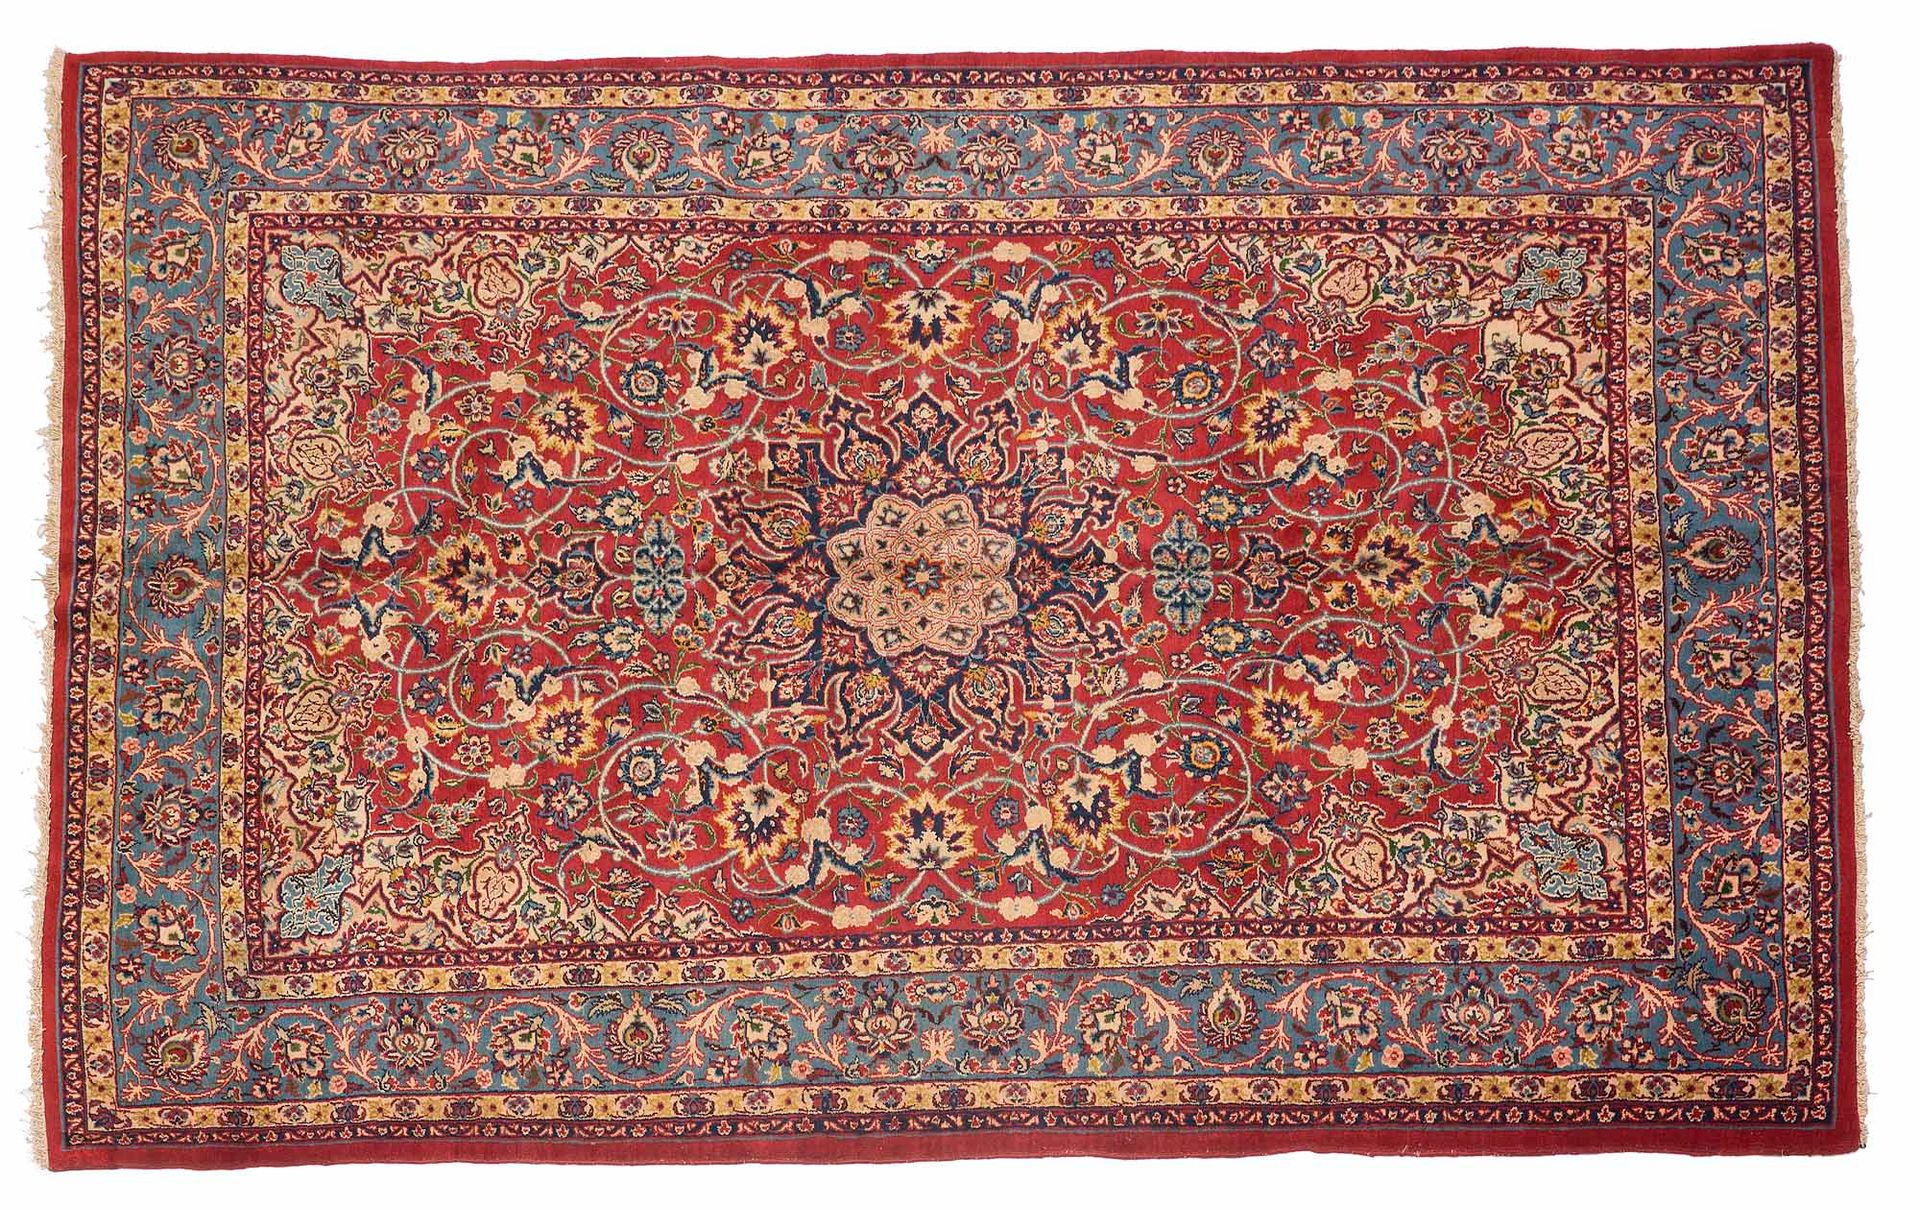 Null Tappeto ISPAHAN (Iran), periodo Shah, metà XX secolo

Dimensioni: 288 x 195&hellip;